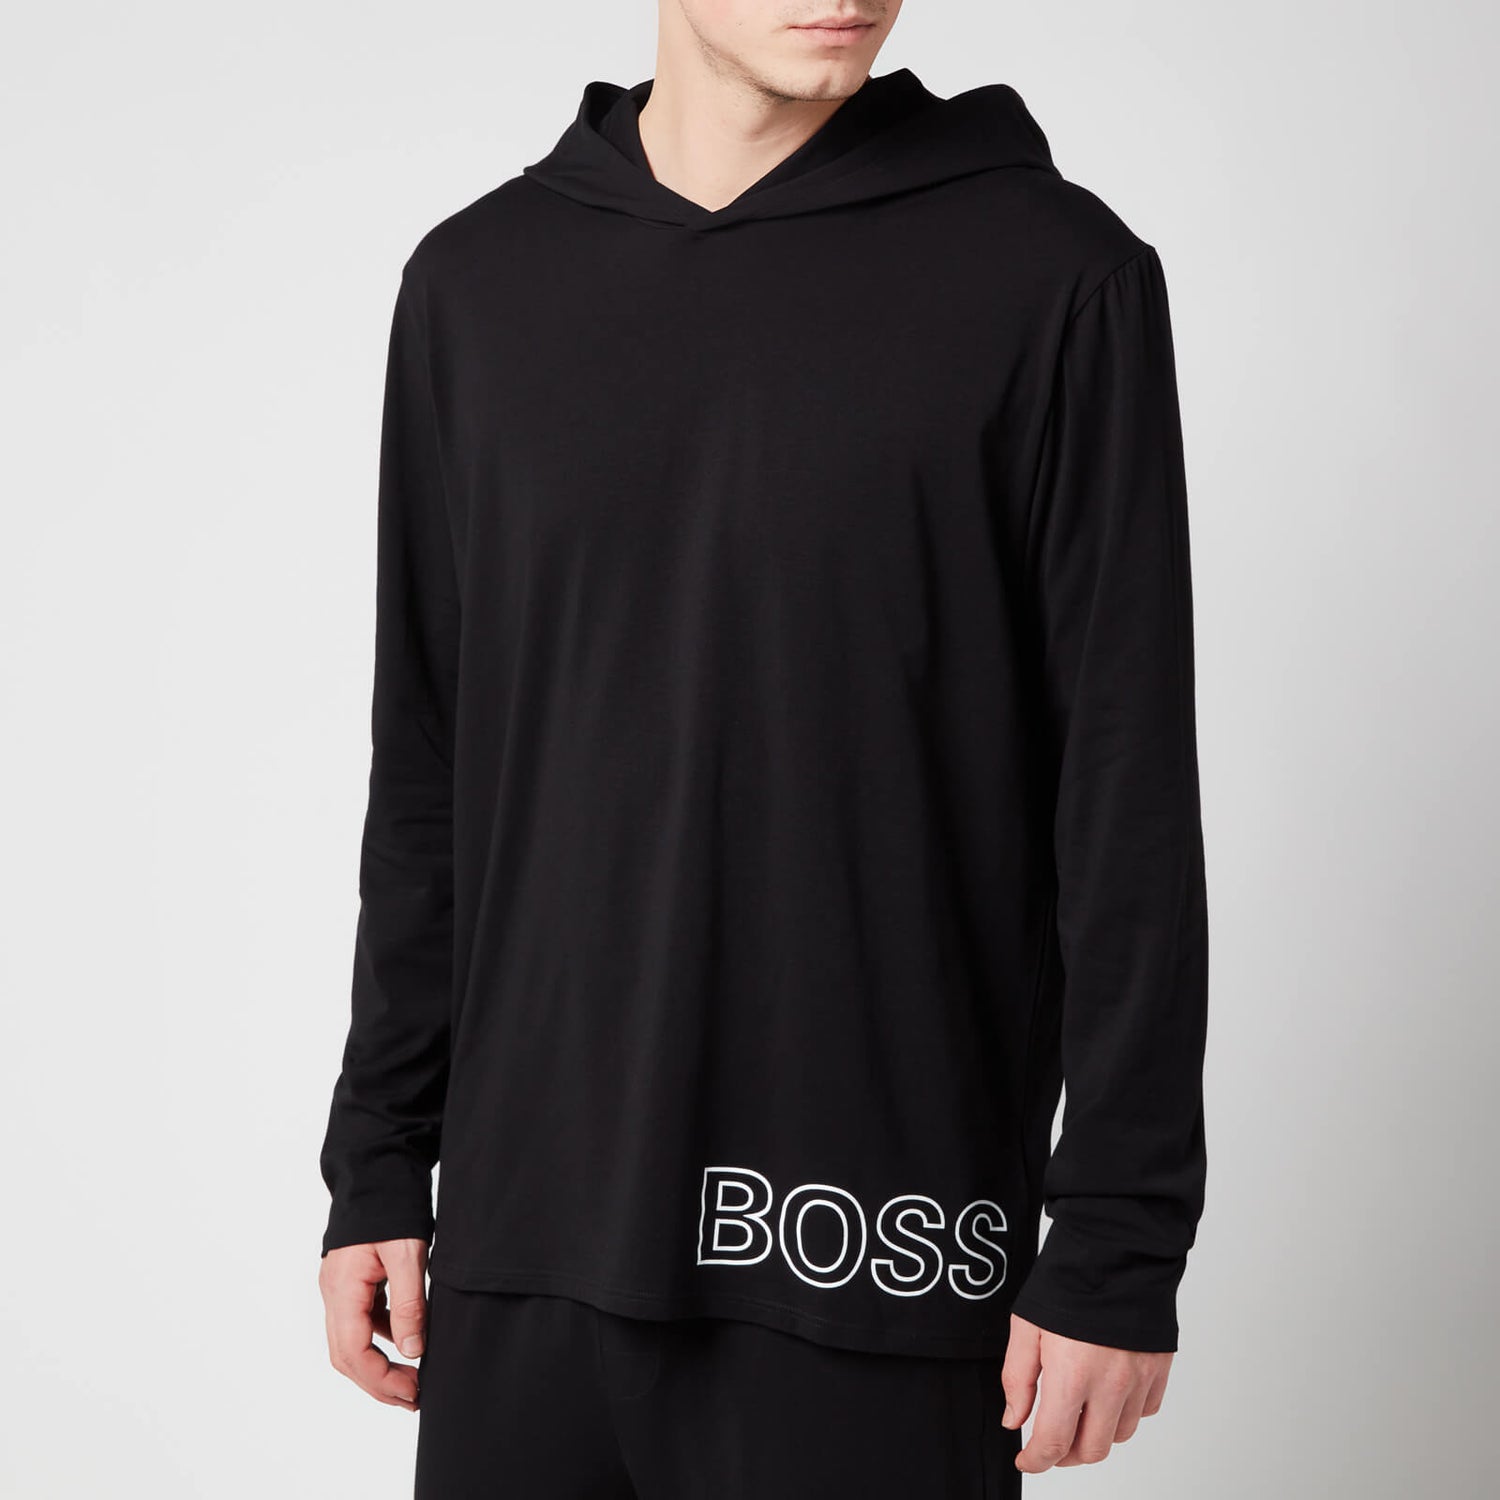 BOSS Bodywear Men's Identity Hoodie - Black - M